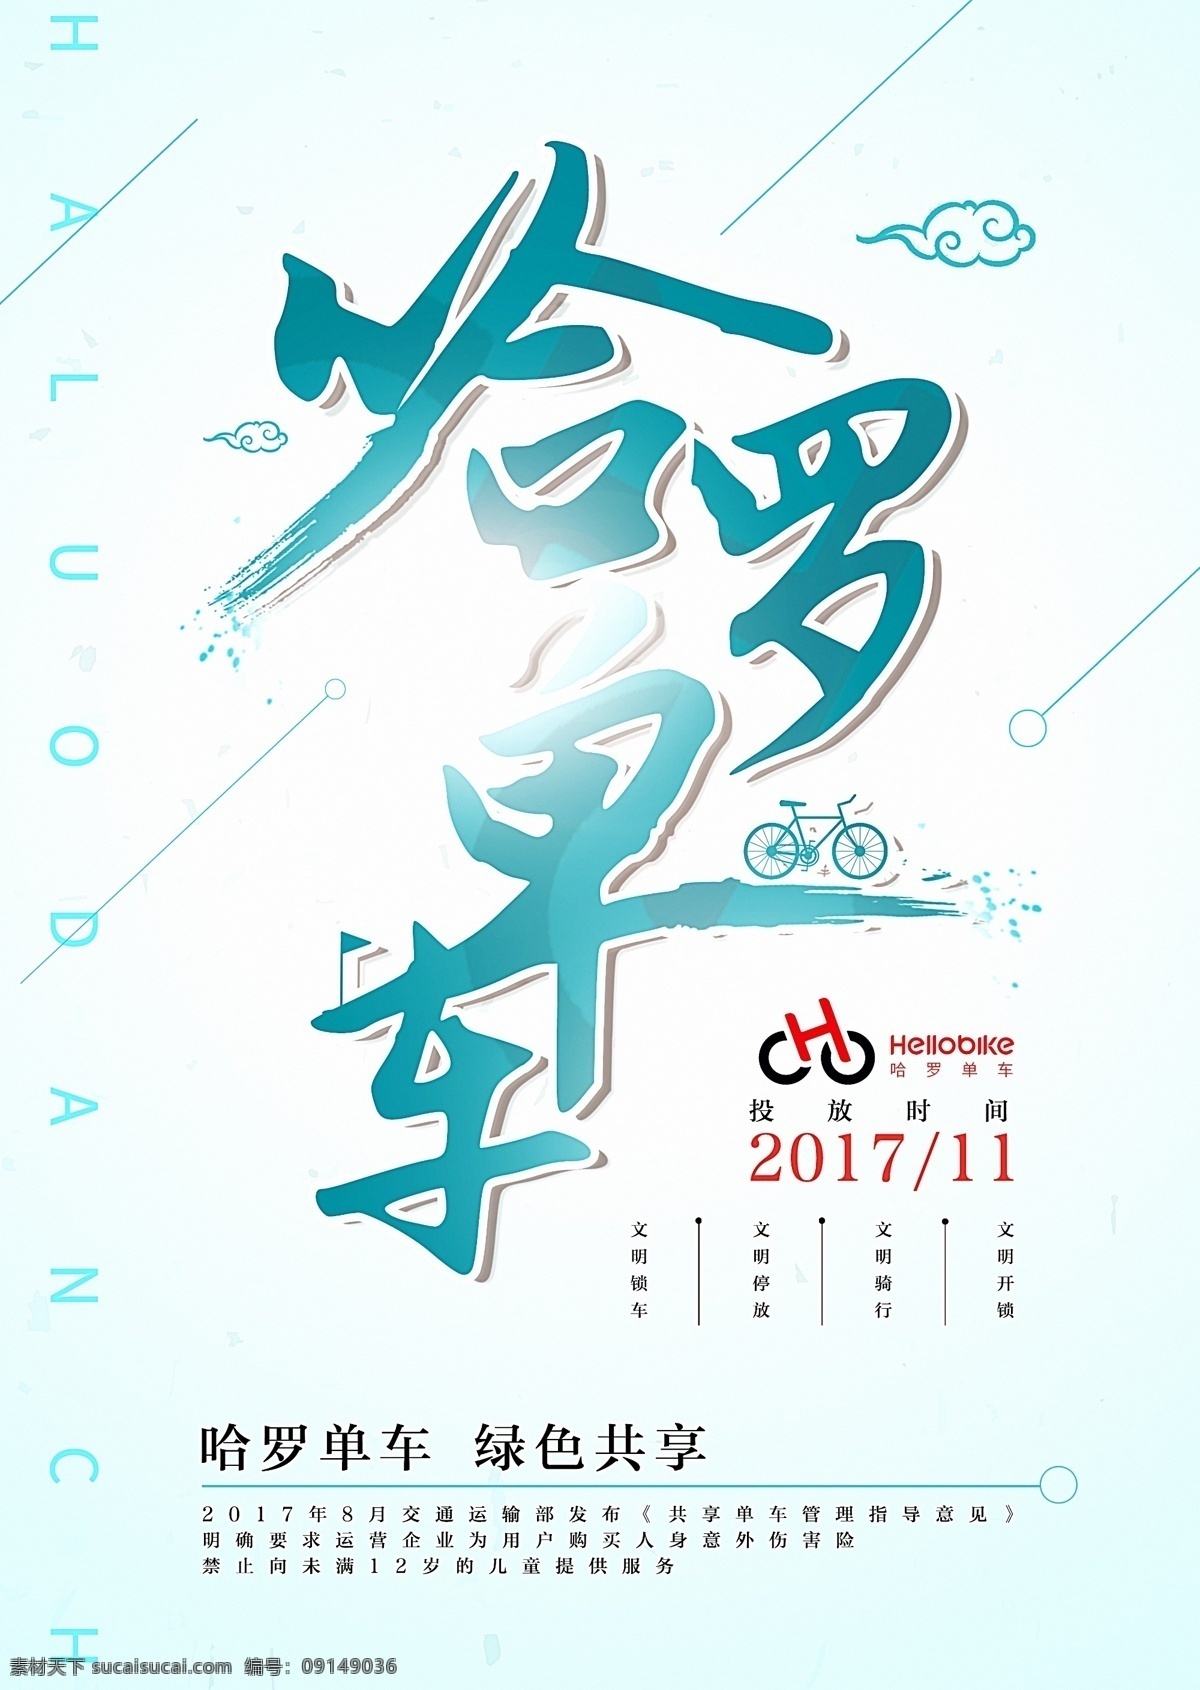 ofo 单车 单车模型 公益广告 共享单车 哈罗单车 快乐骑行 蓝色 骑行旅游 骑行旅游海报 文明出行 自行车旅游 自由自在